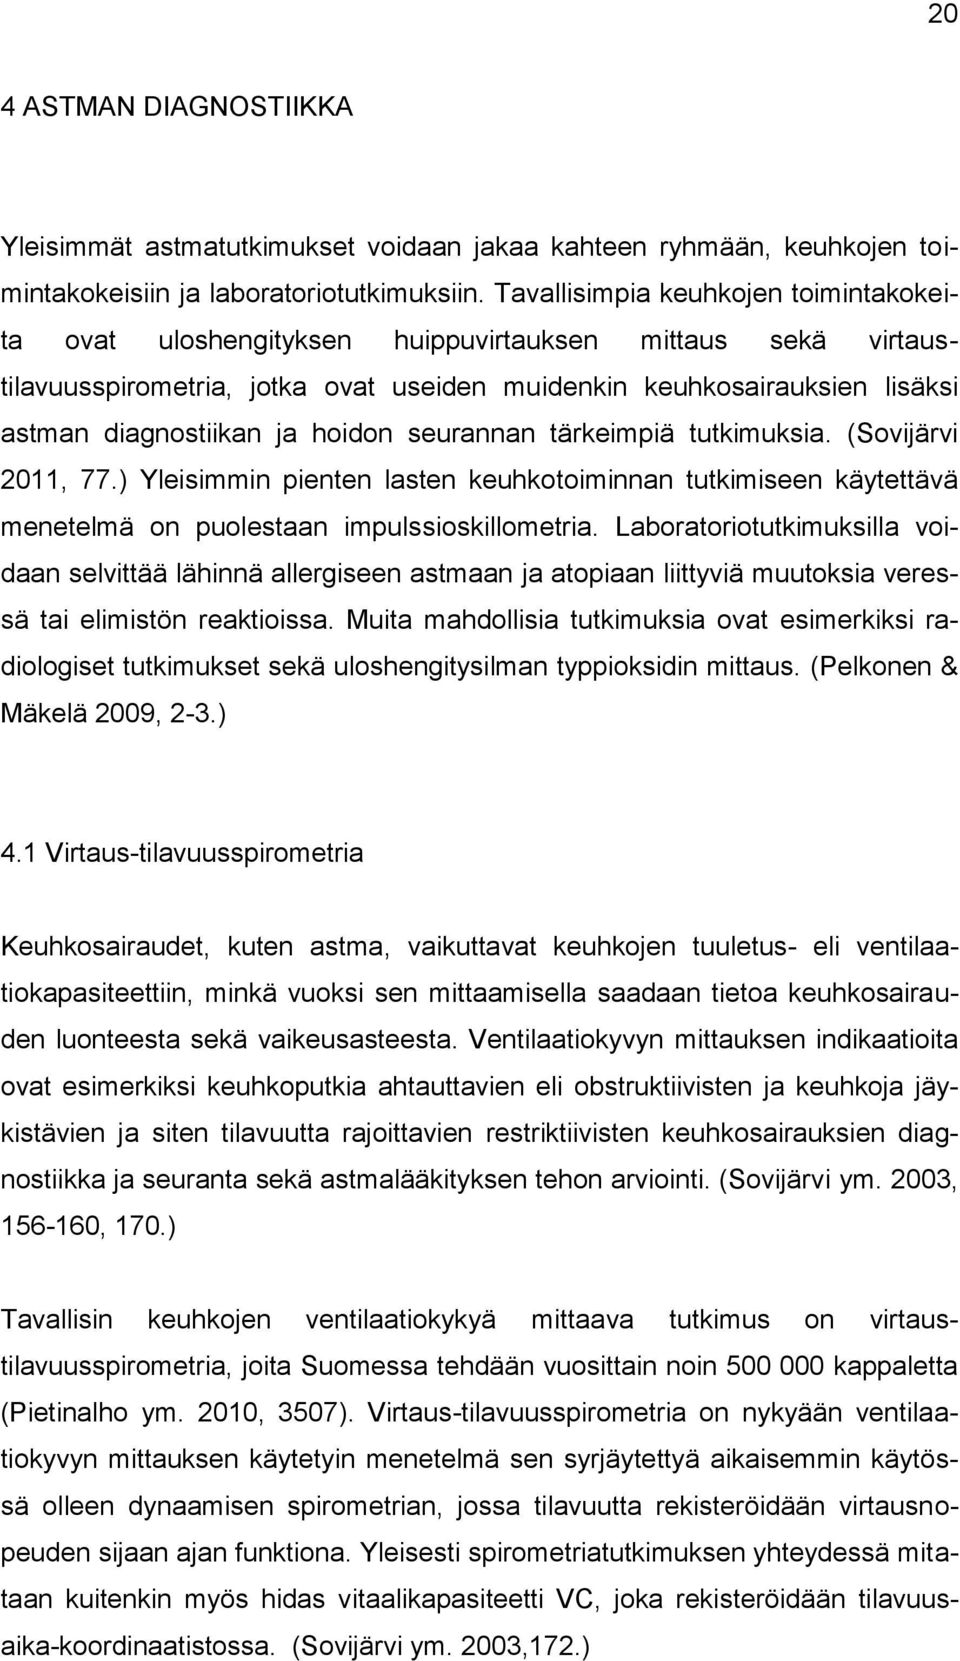 hoidon seurannan tärkeimpiä tutkimuksia. (Sovijärvi 2011, 77.) Yleisimmin pienten lasten keuhkotoiminnan tutkimiseen käytettävä menetelmä on puolestaan impulssioskillometria.